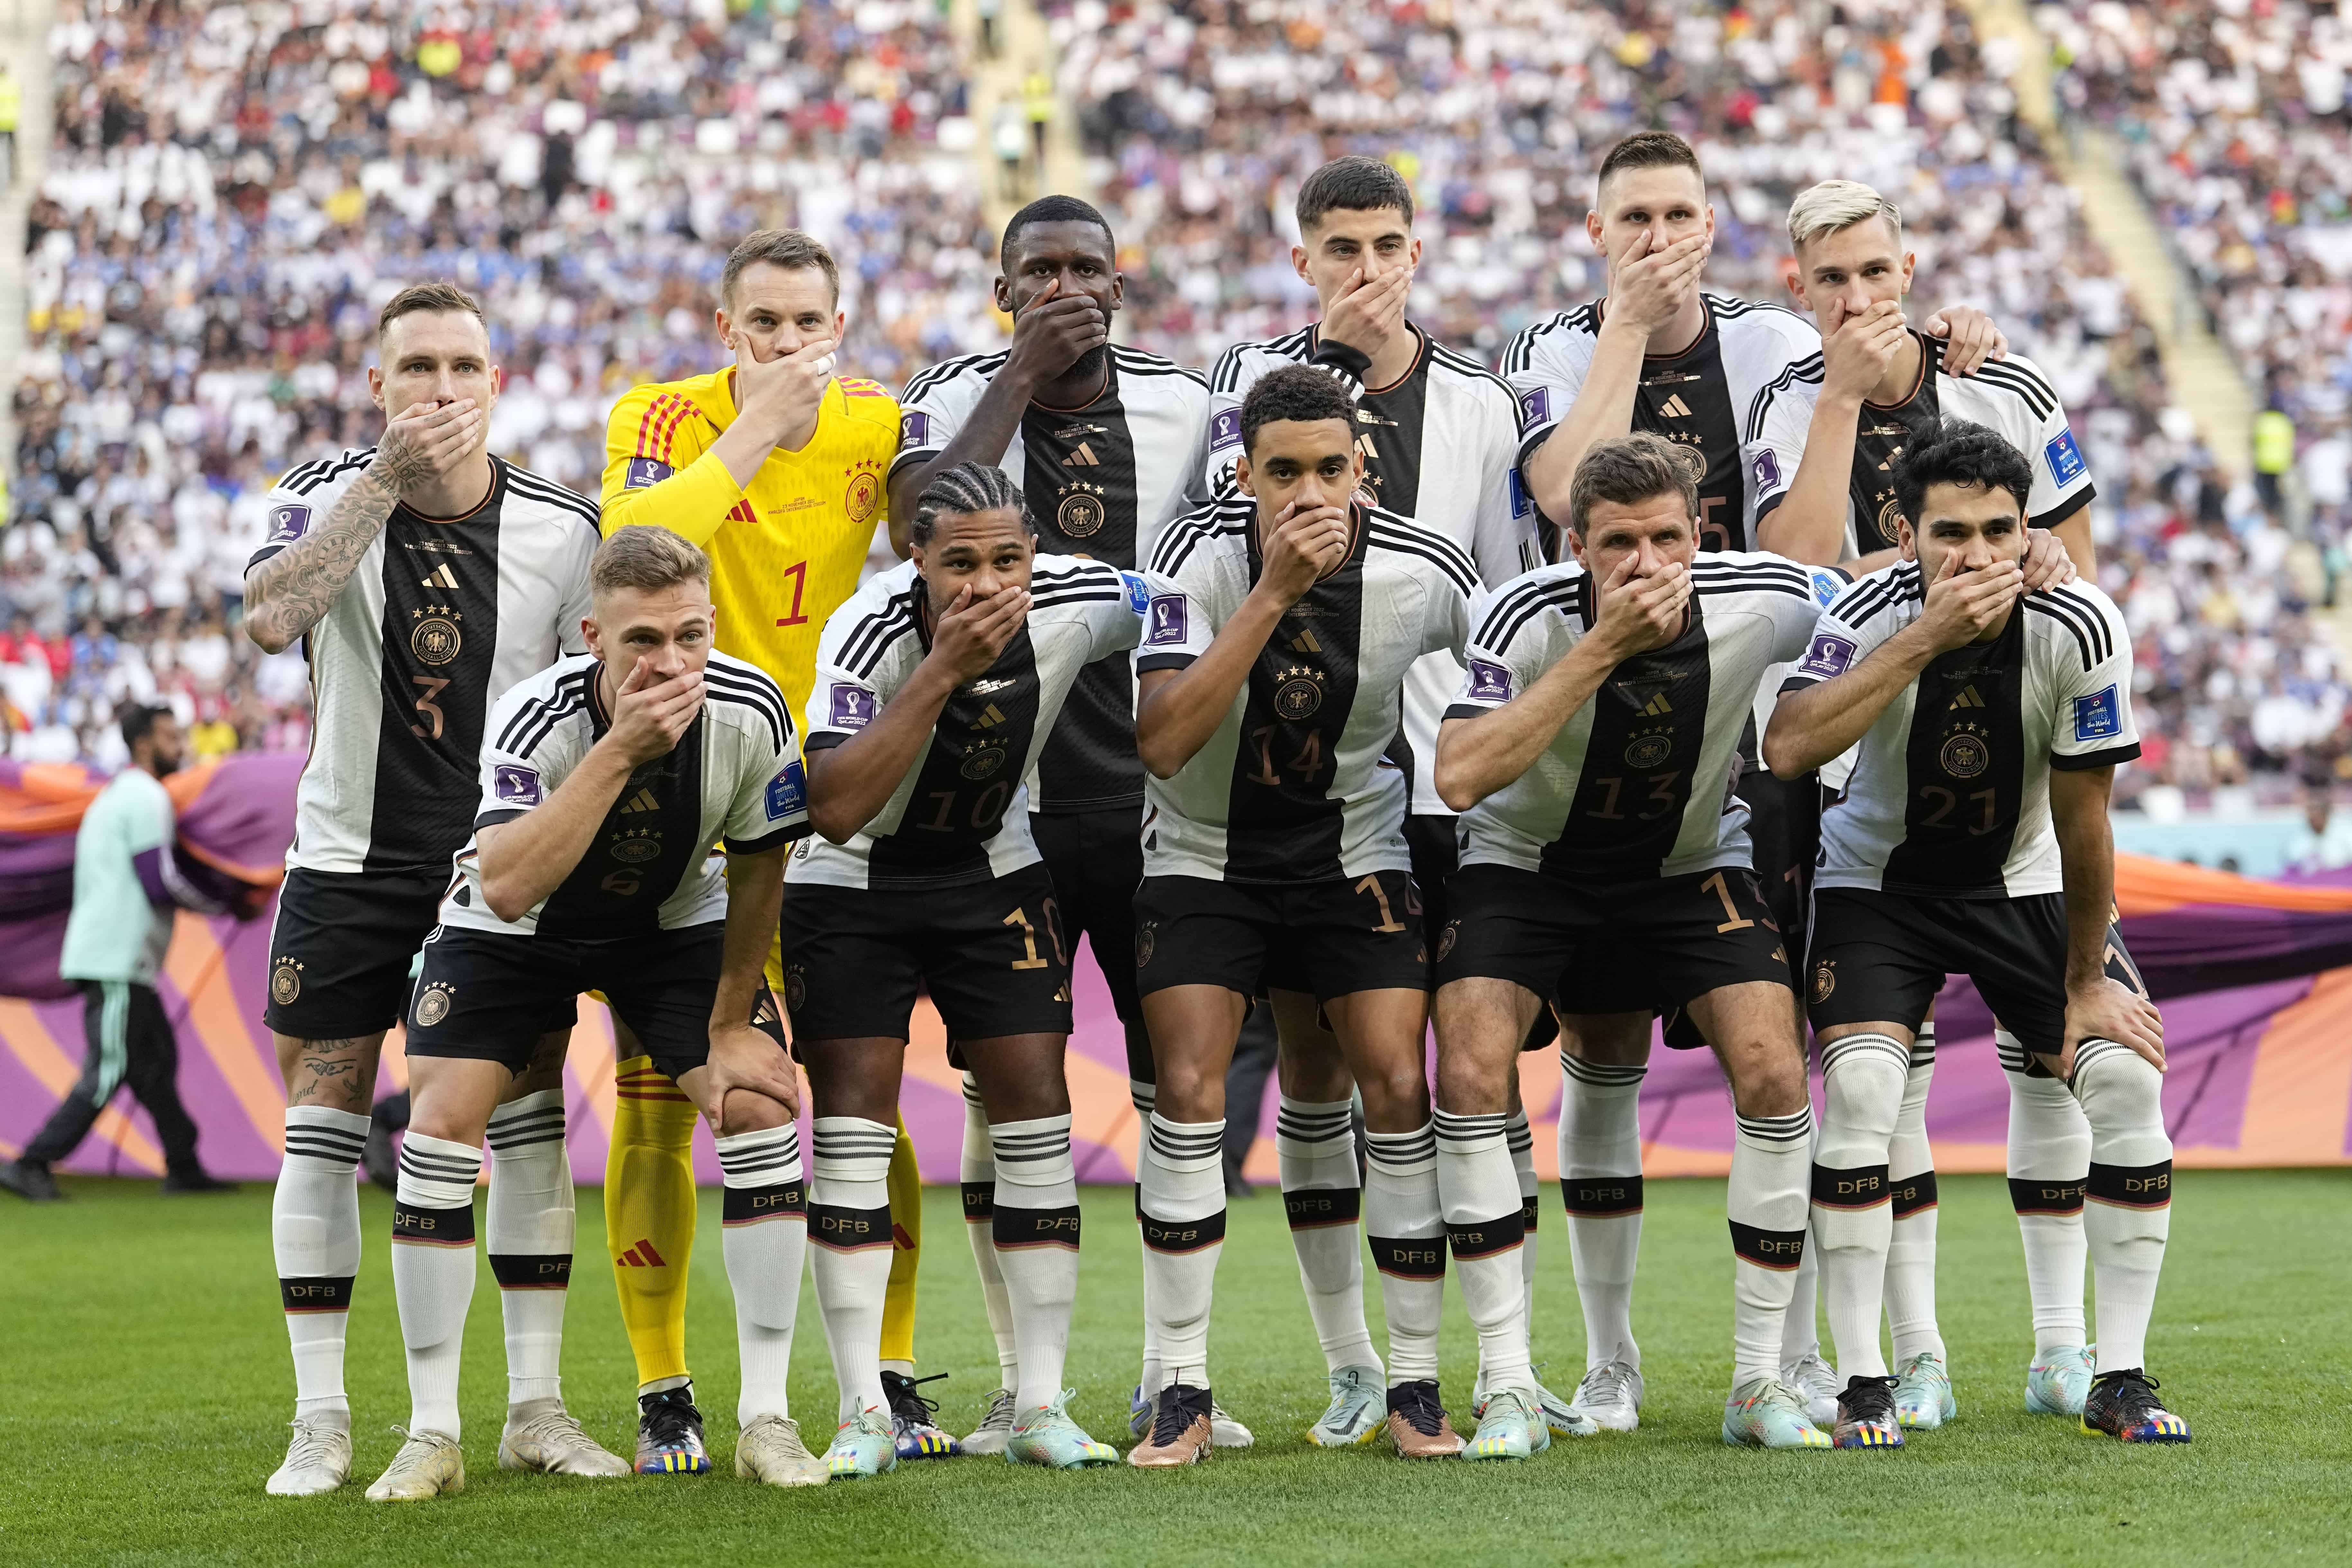 Jugadores de Alemania posan para la foto del equipo mientras se tapan la boca durante el partido de fútbol del grupo E de la Copa Mundial entre Alemania y Japón, en el Estadio Internacional Khalifa en Doha, Qatar, el miércoles 23 de noviembre de 2022.